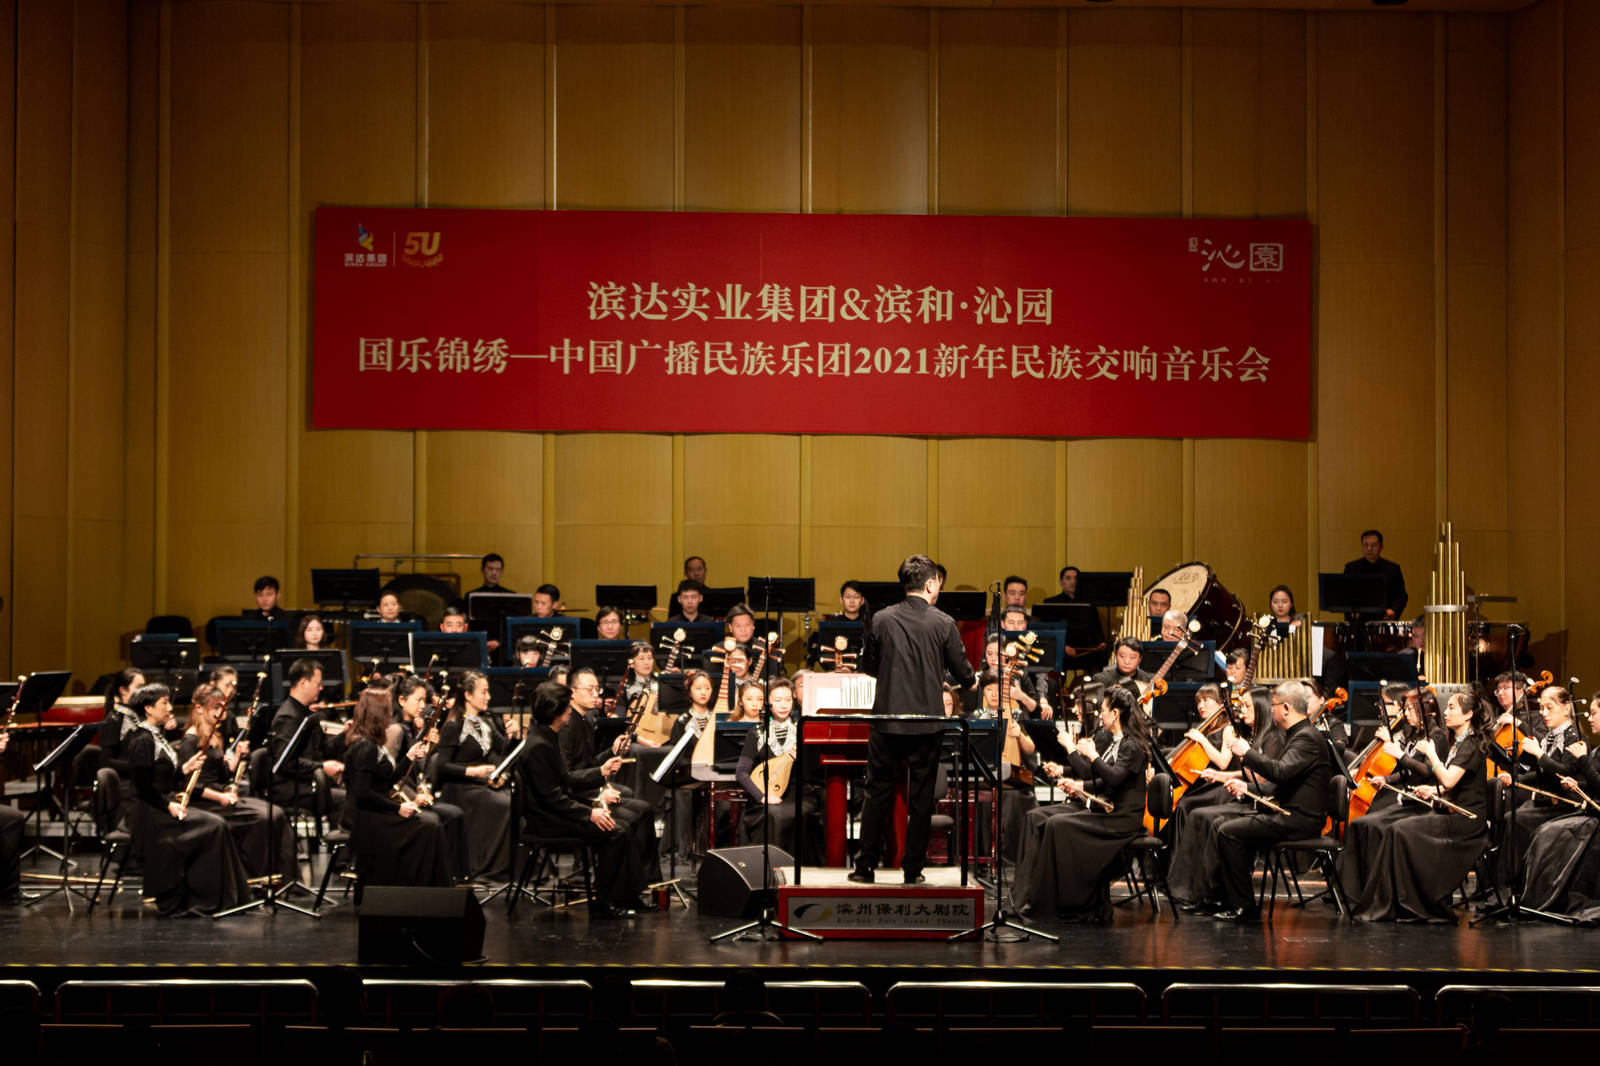 中国广播民族交响乐团 · 2021年滨州新年音乐会在滨州保利大剧院成功